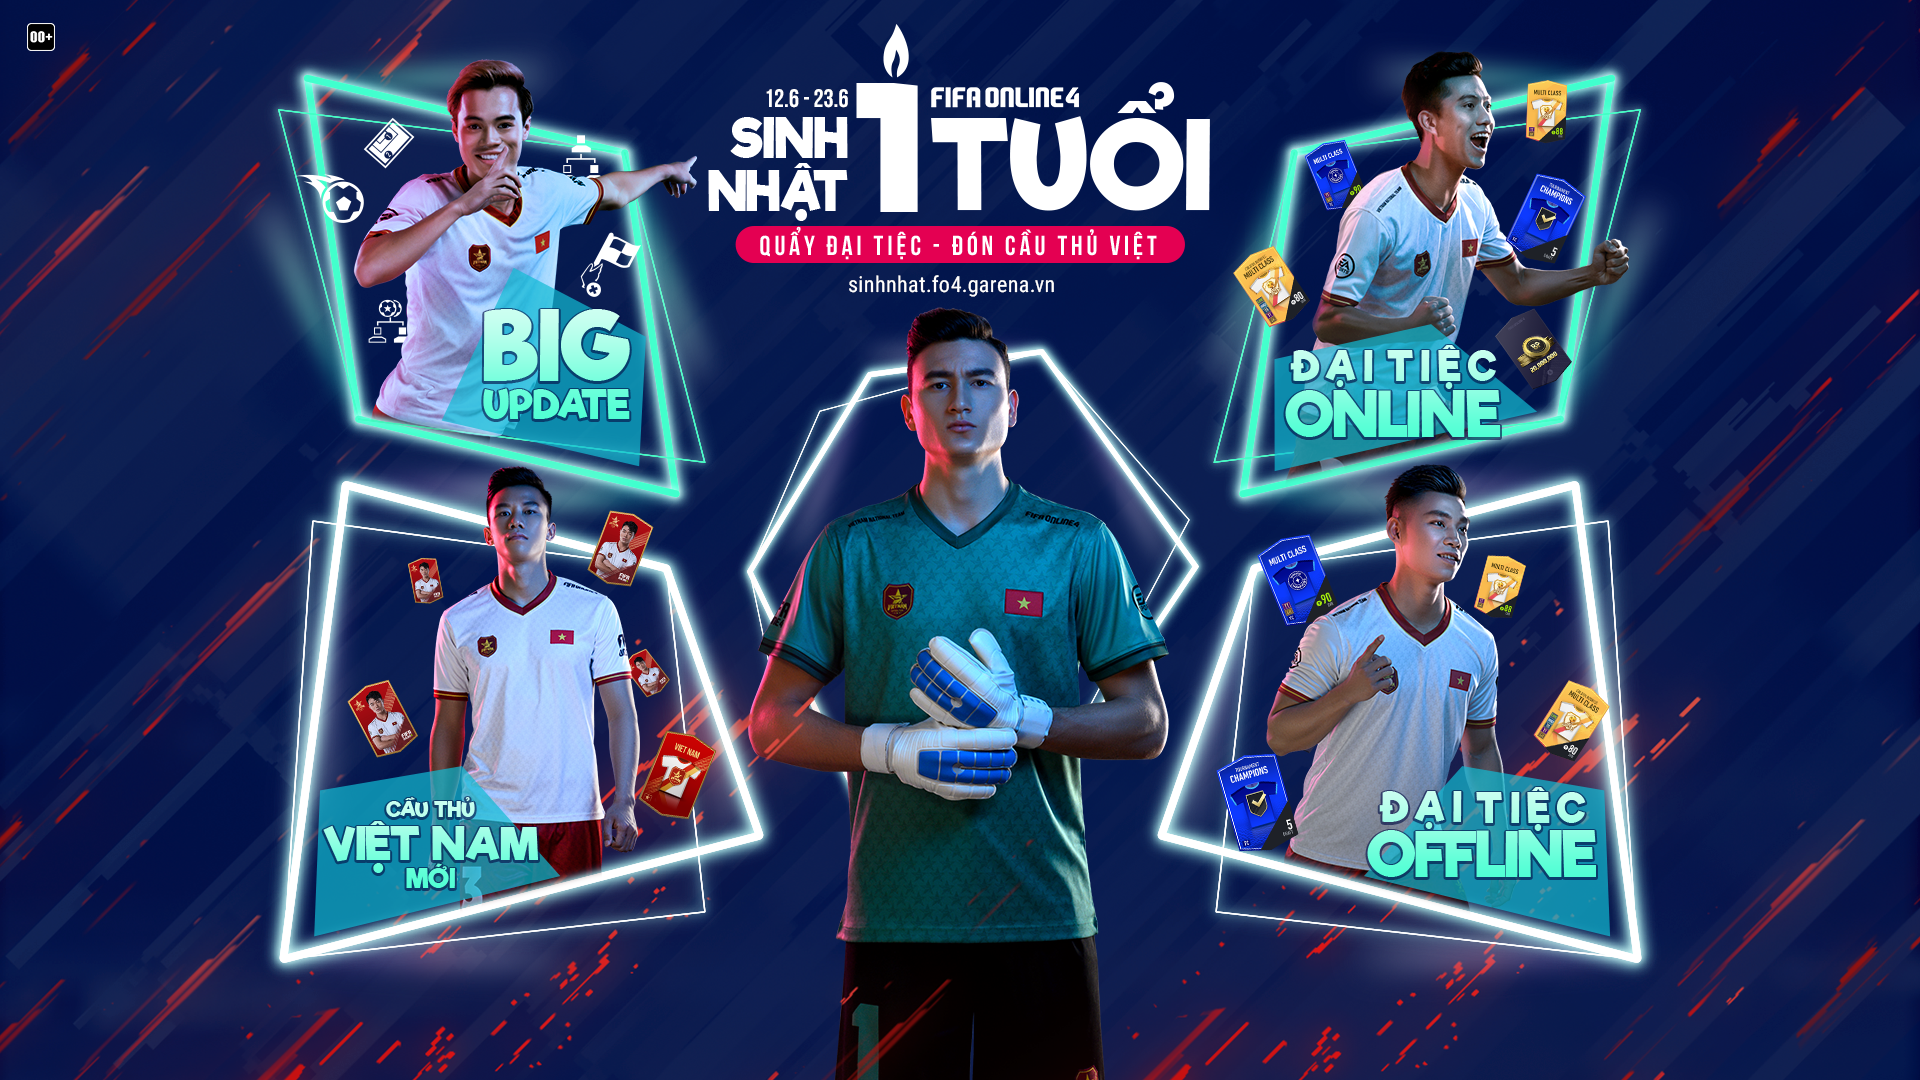 FIFA Online 4 Việt Nam  Sự kiện mừng Sinh Nhật QUẨY ĐẠI TIỆC  SĂN CẦU  THỦ VIỆT